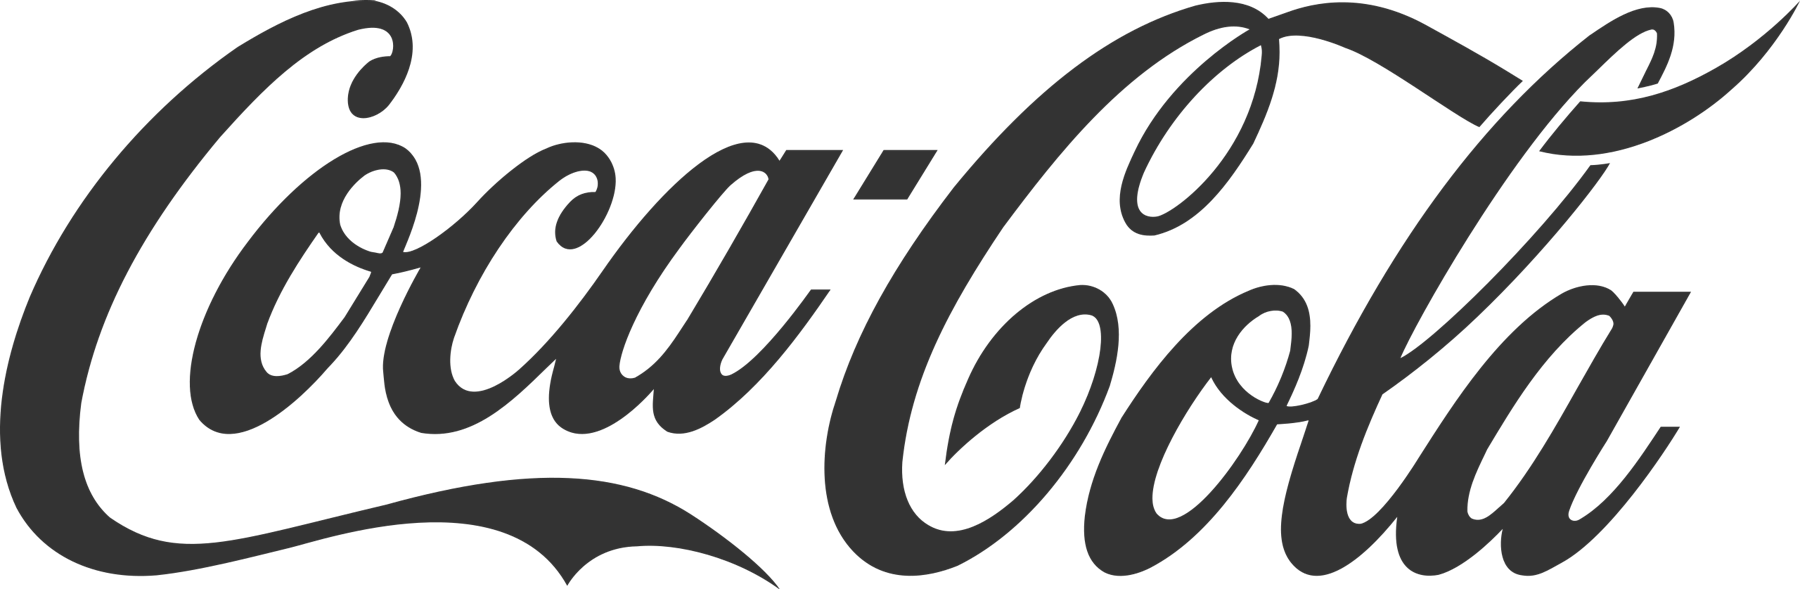 Coca Cola logo black png